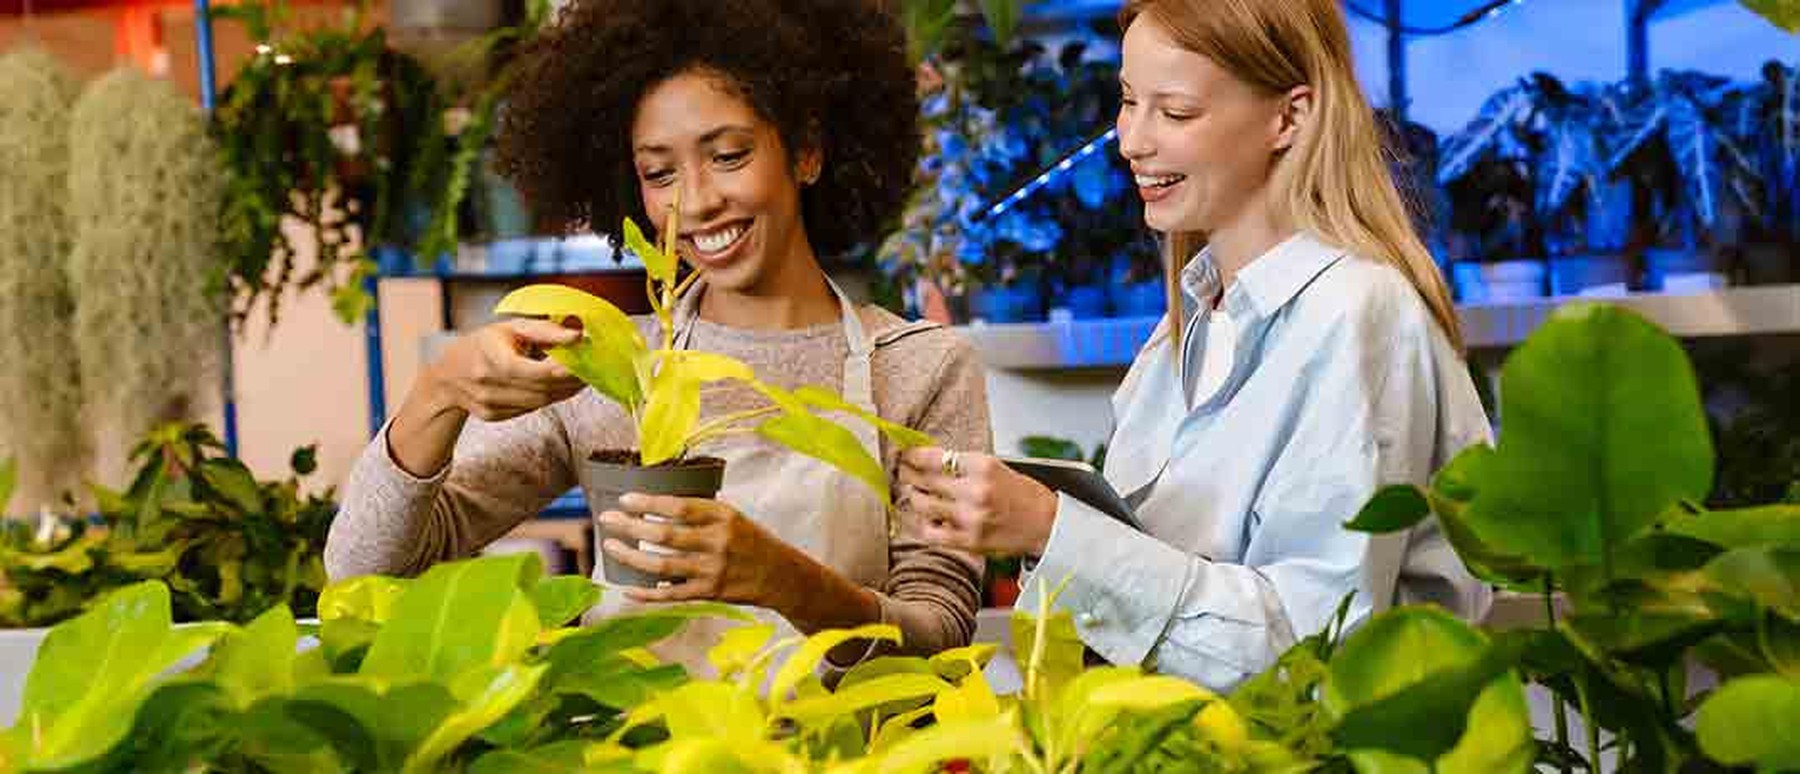 Goedkoop planten kopen? 6 tips om van groen te genieten zonder rood te staan